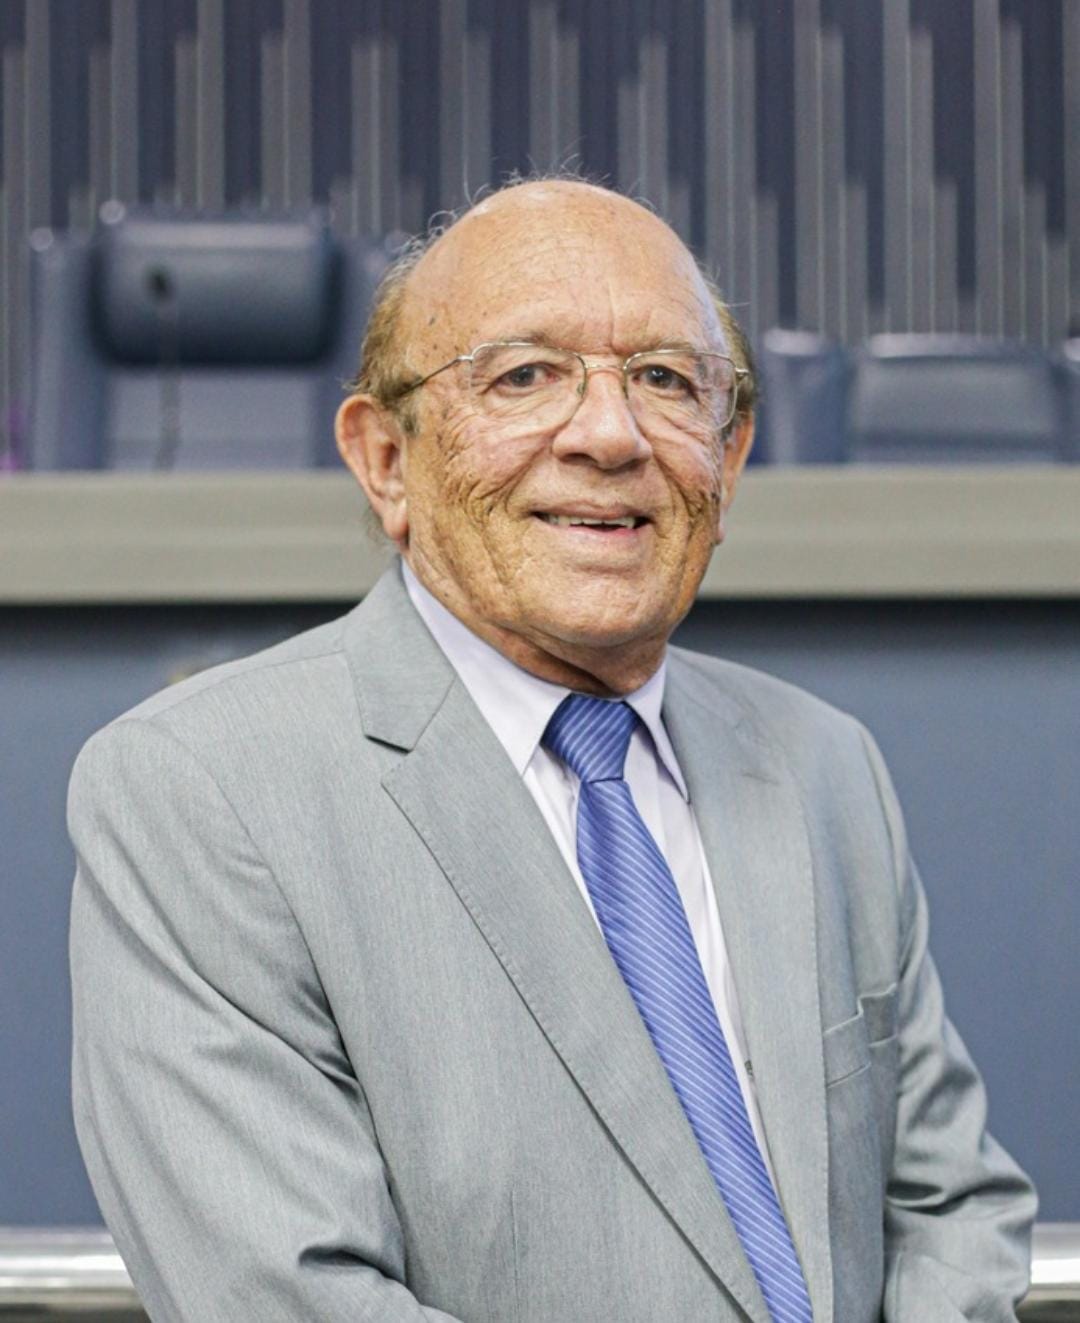 Presidente municipal do PSDB e vereador de Teresina, Edson Melo